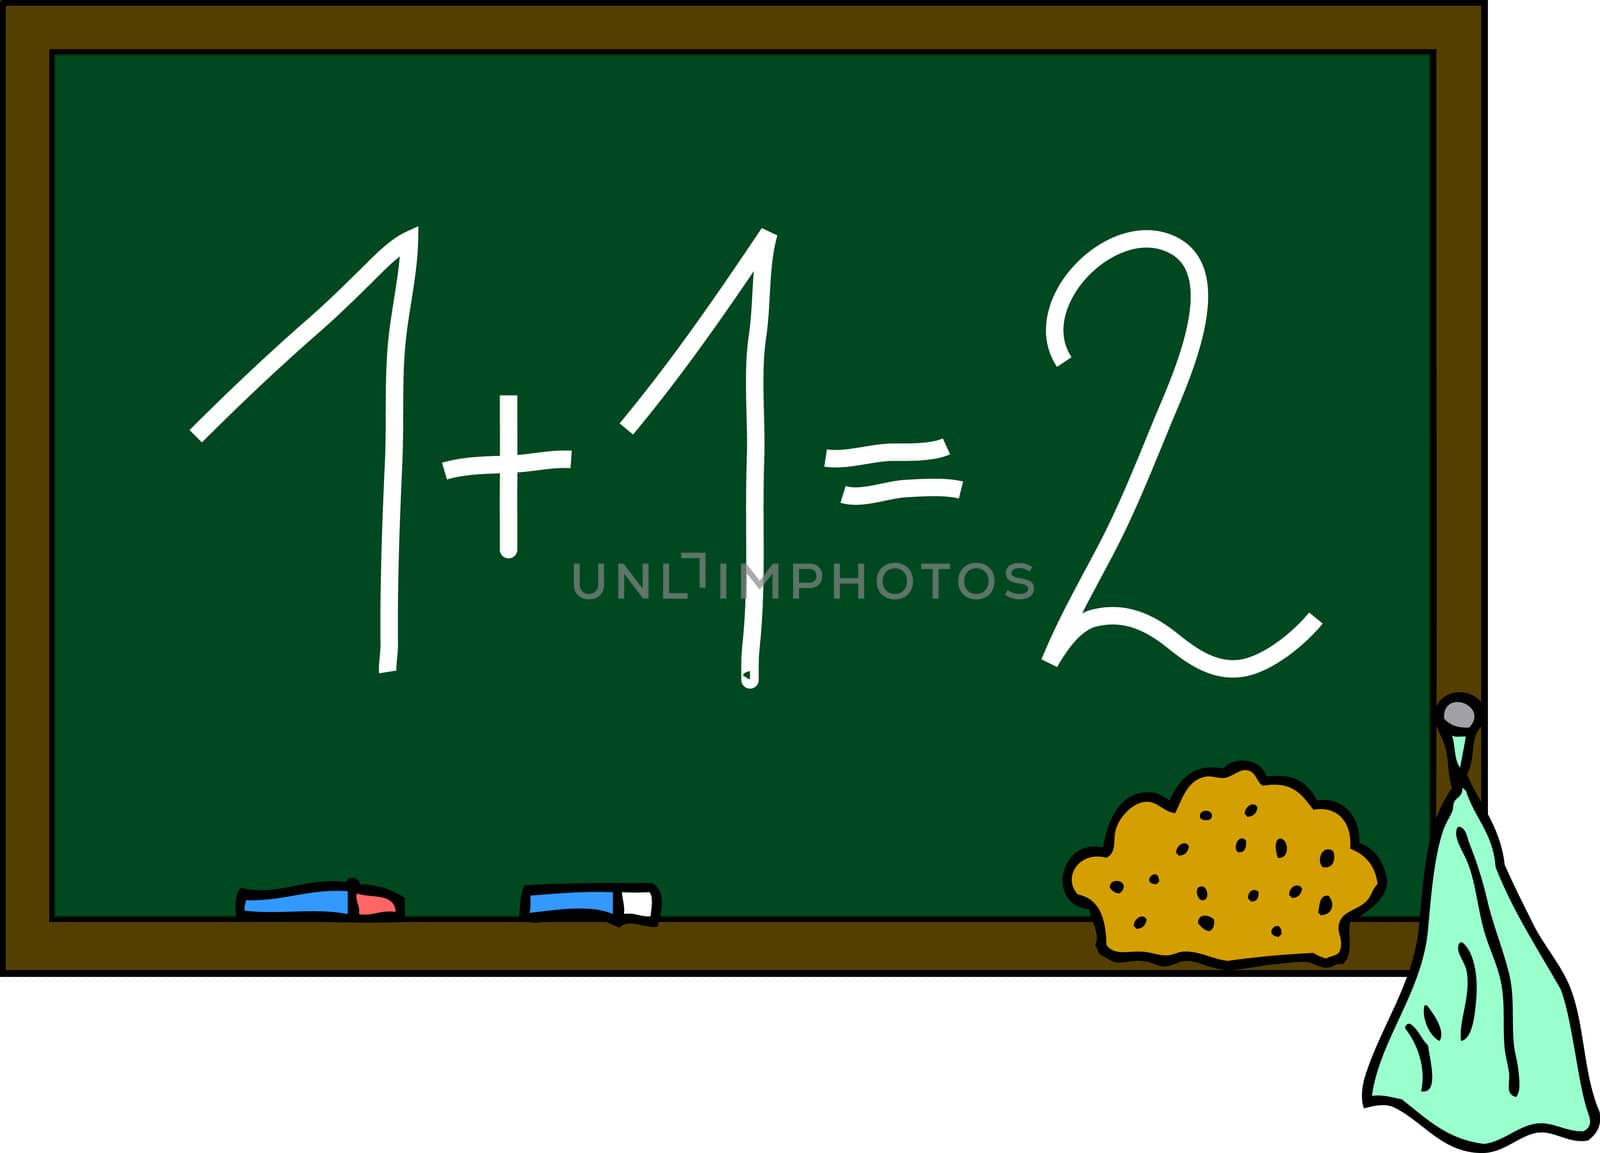 blackboard 1+1=2